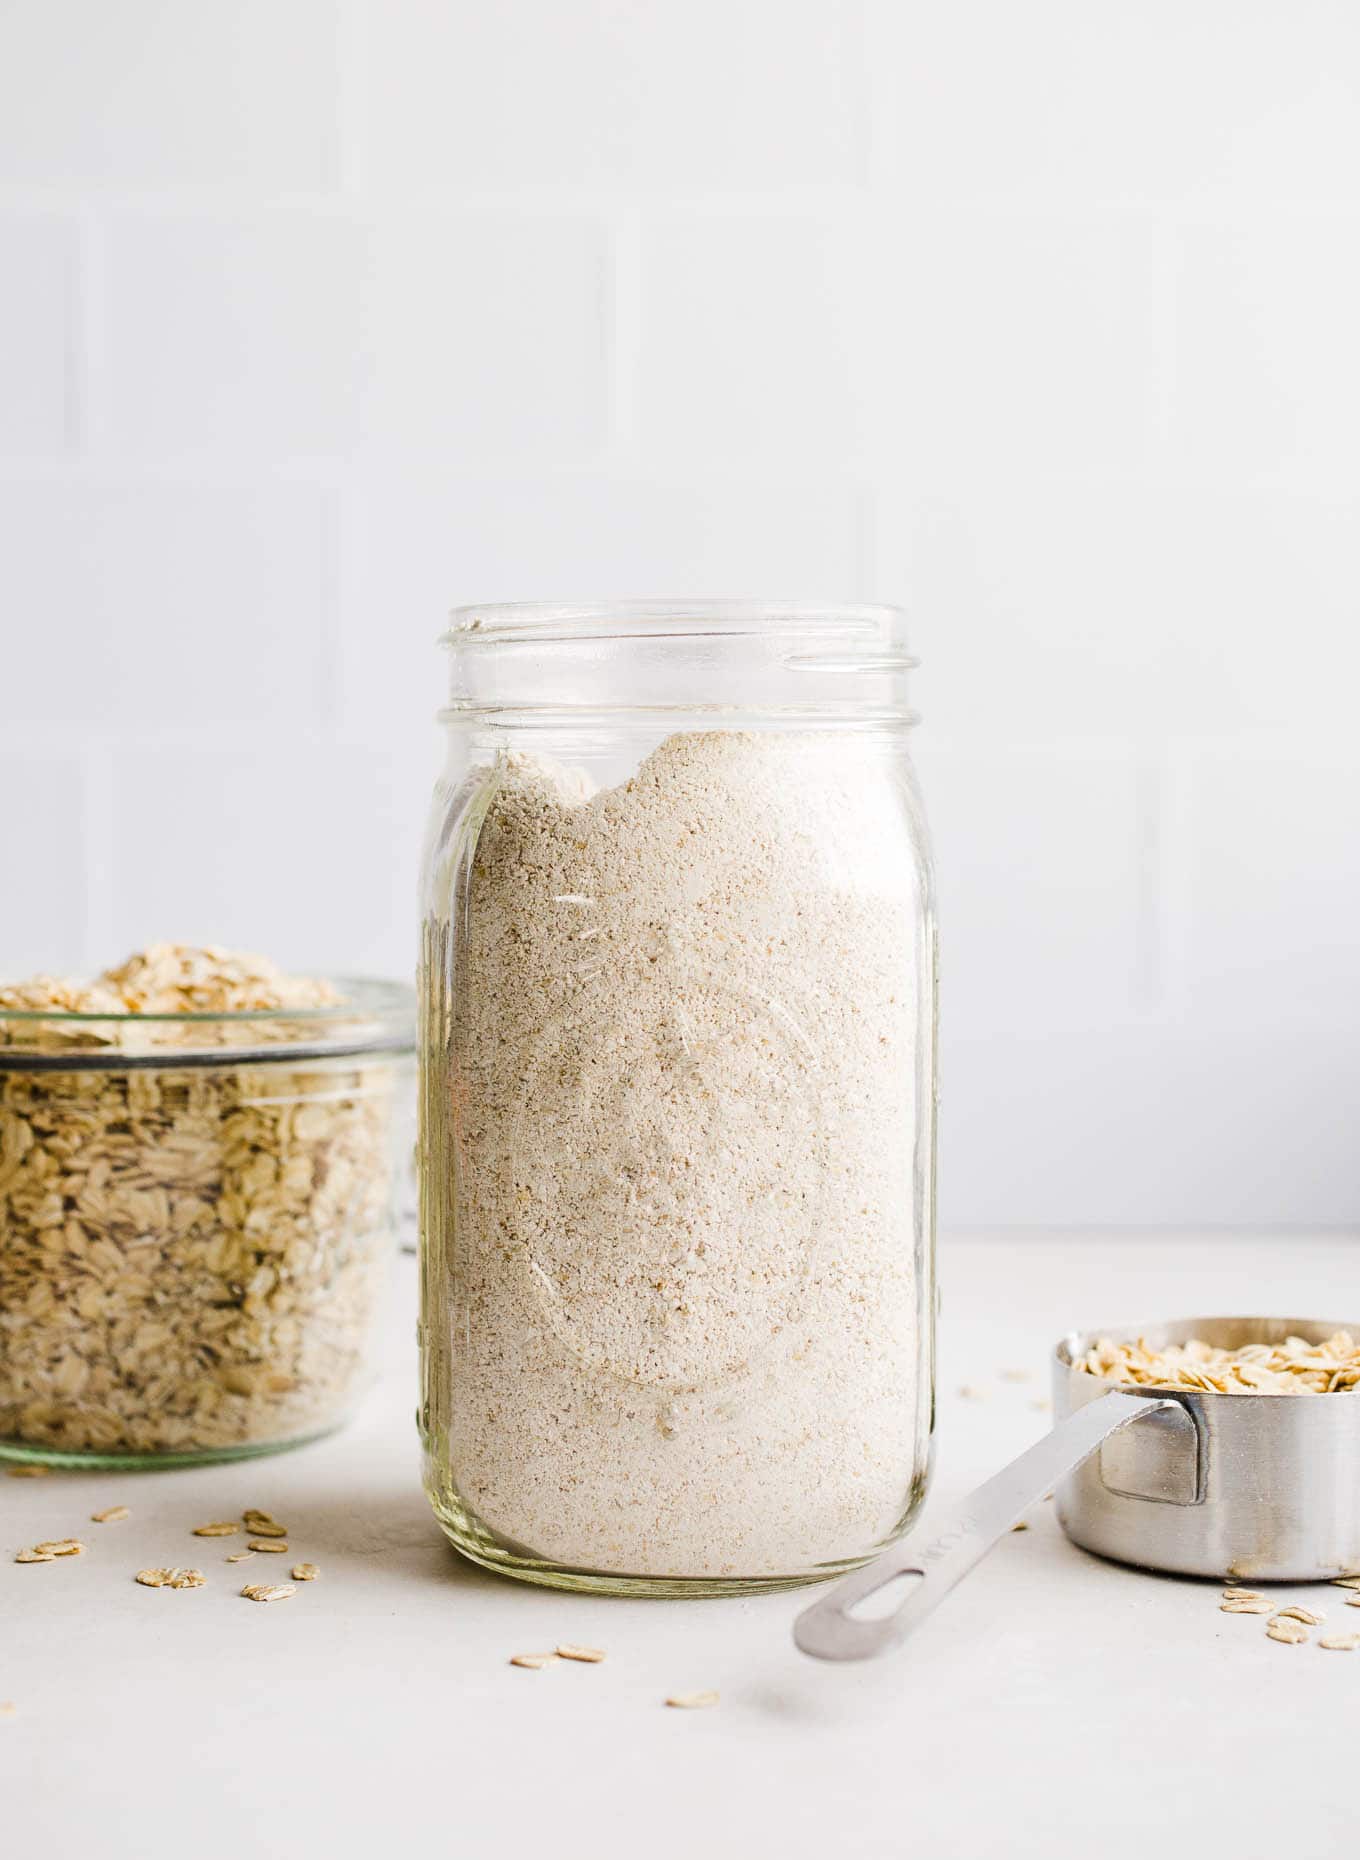 homemade oat flour in jars